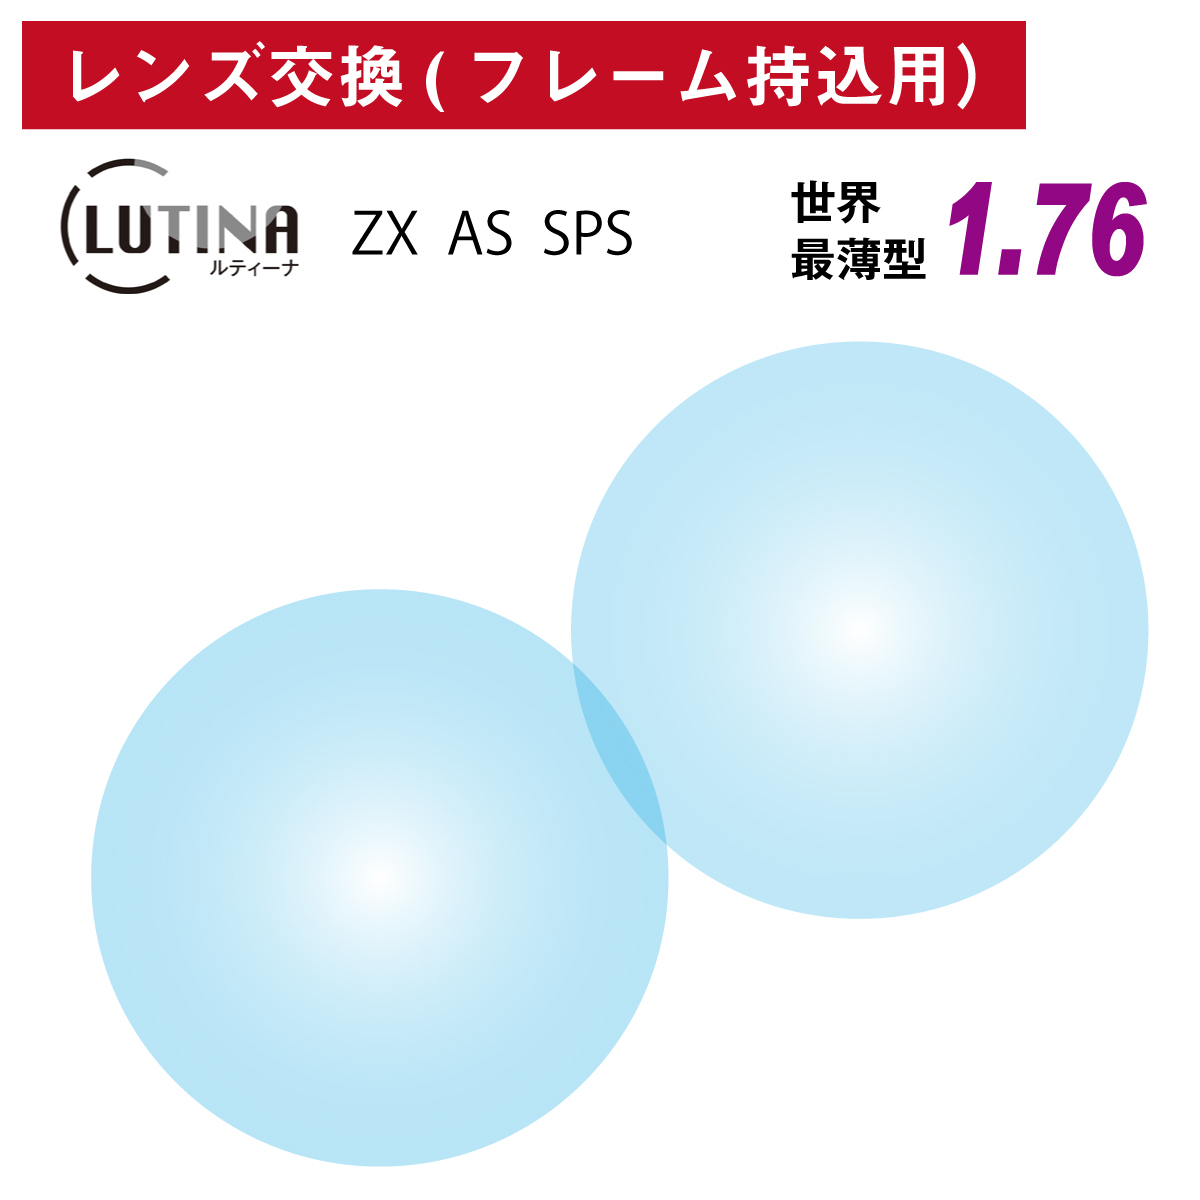 フレーム持ち込み用 LUTINA ルティーナ ZX AS SPS 引出物 東海光学 世界最薄型 非球面 レンズ 屈折率1.76 眼鏡 2枚1組 ディズニープリンセスのベビーグッズも大集合 TBS HEV94%カット UVカット UV420 紫外線カット 日本製 マツコの知らない世界 ブルーライトカット メガネ